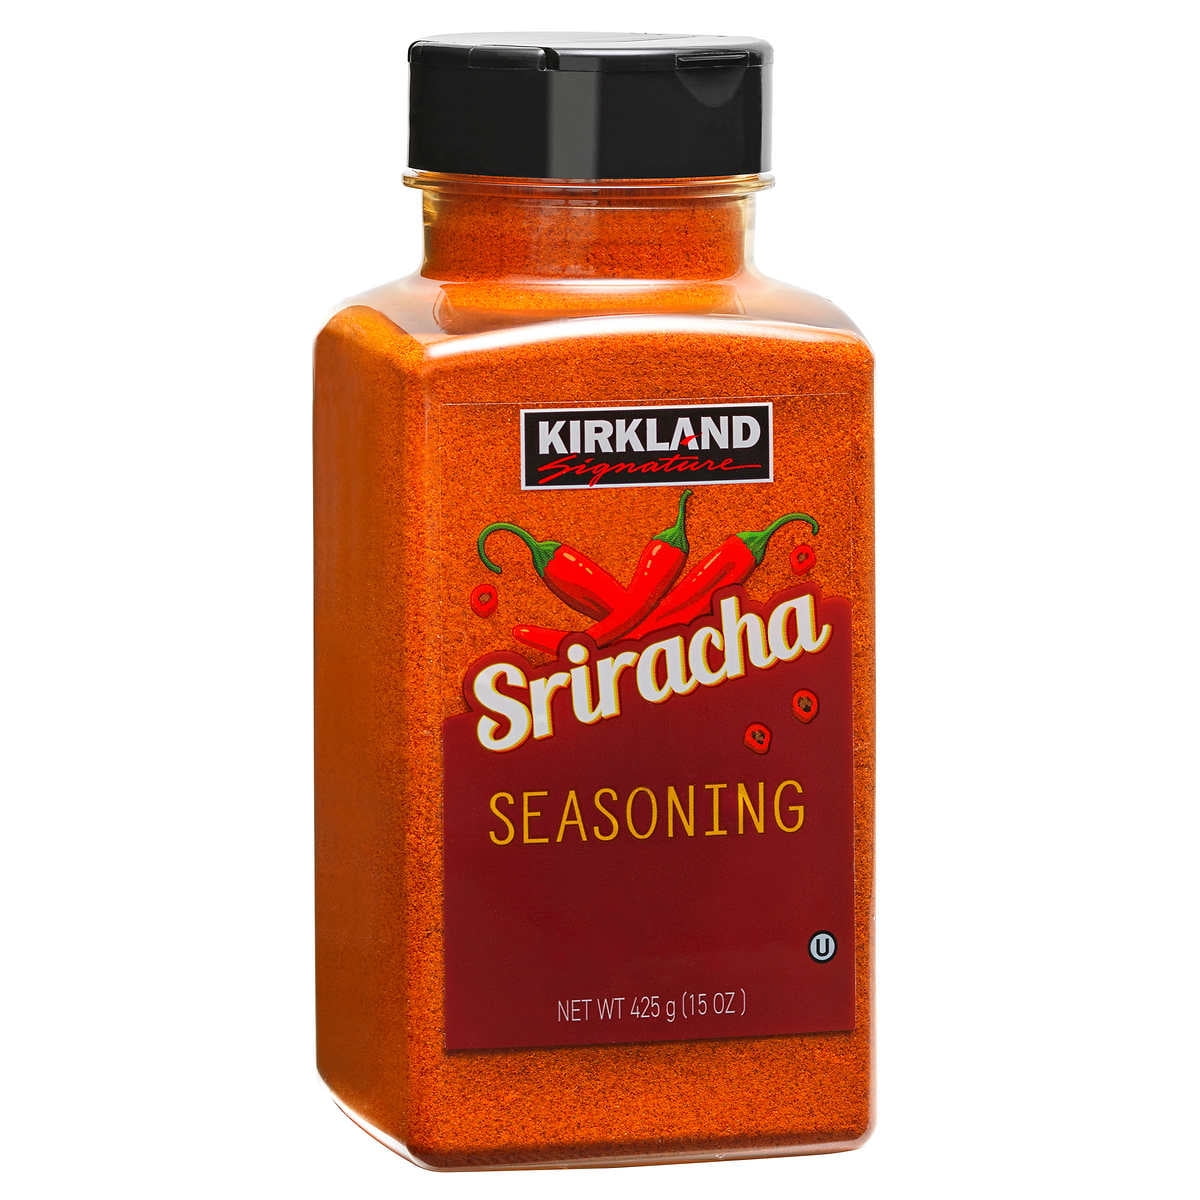 Dan-O's Cheesoning Seasoning | Medium Bottle | 1 Pack (7.6 oz)